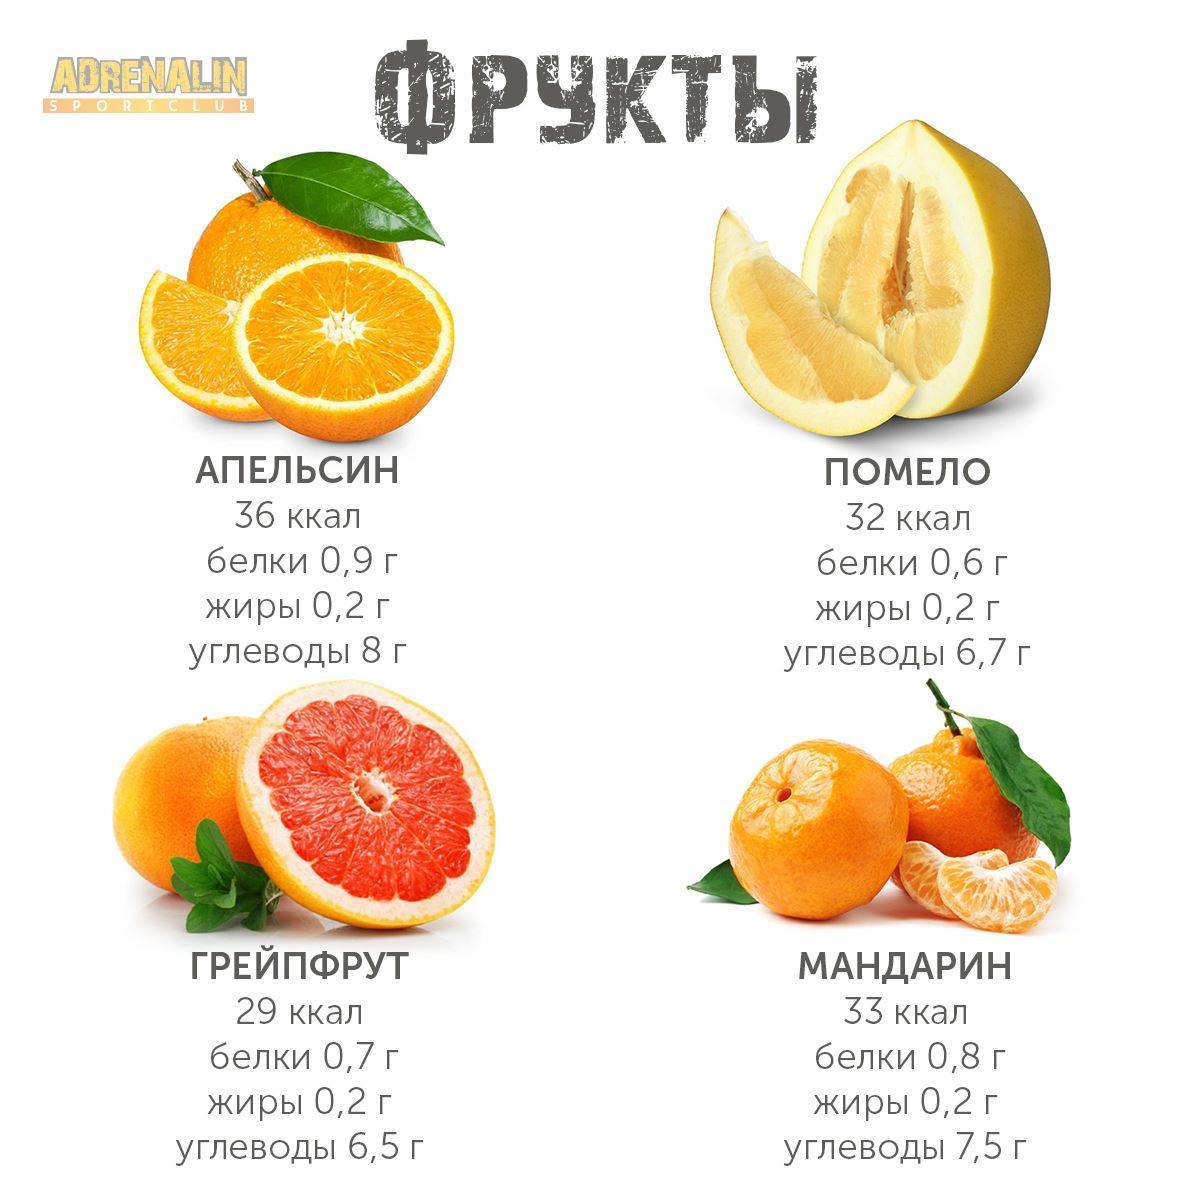 Сколько калорий содержится в 100 граммах мандаринов и в 1 шт